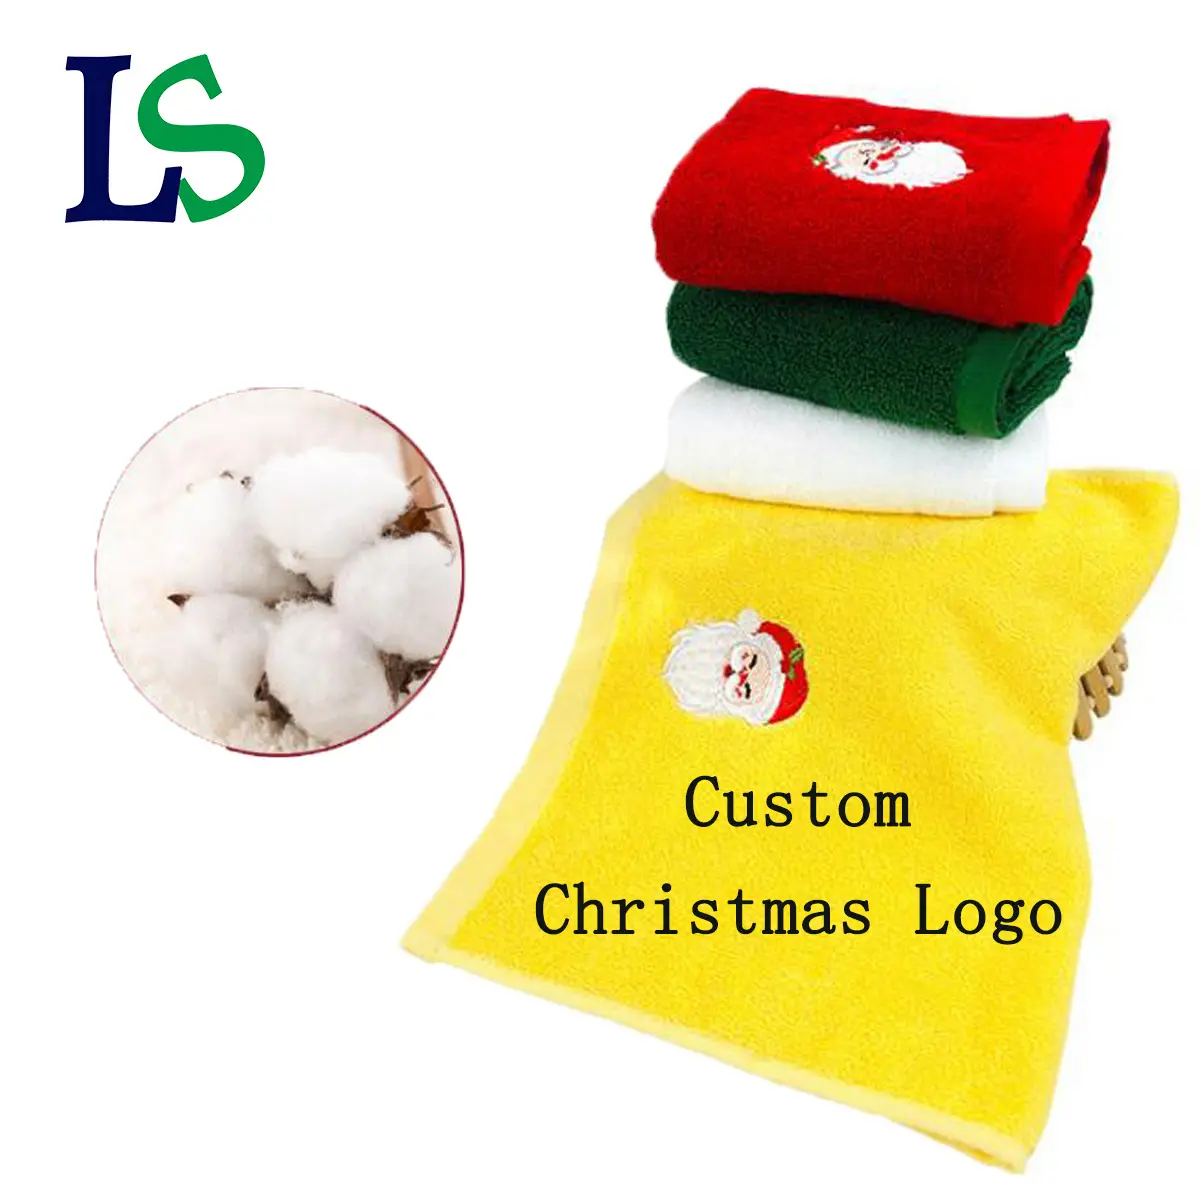 Toalha bordada costume do algodão do logotipo do Natal do pacote luxuoso para a decoração do Natal da família e os presentes do Natal